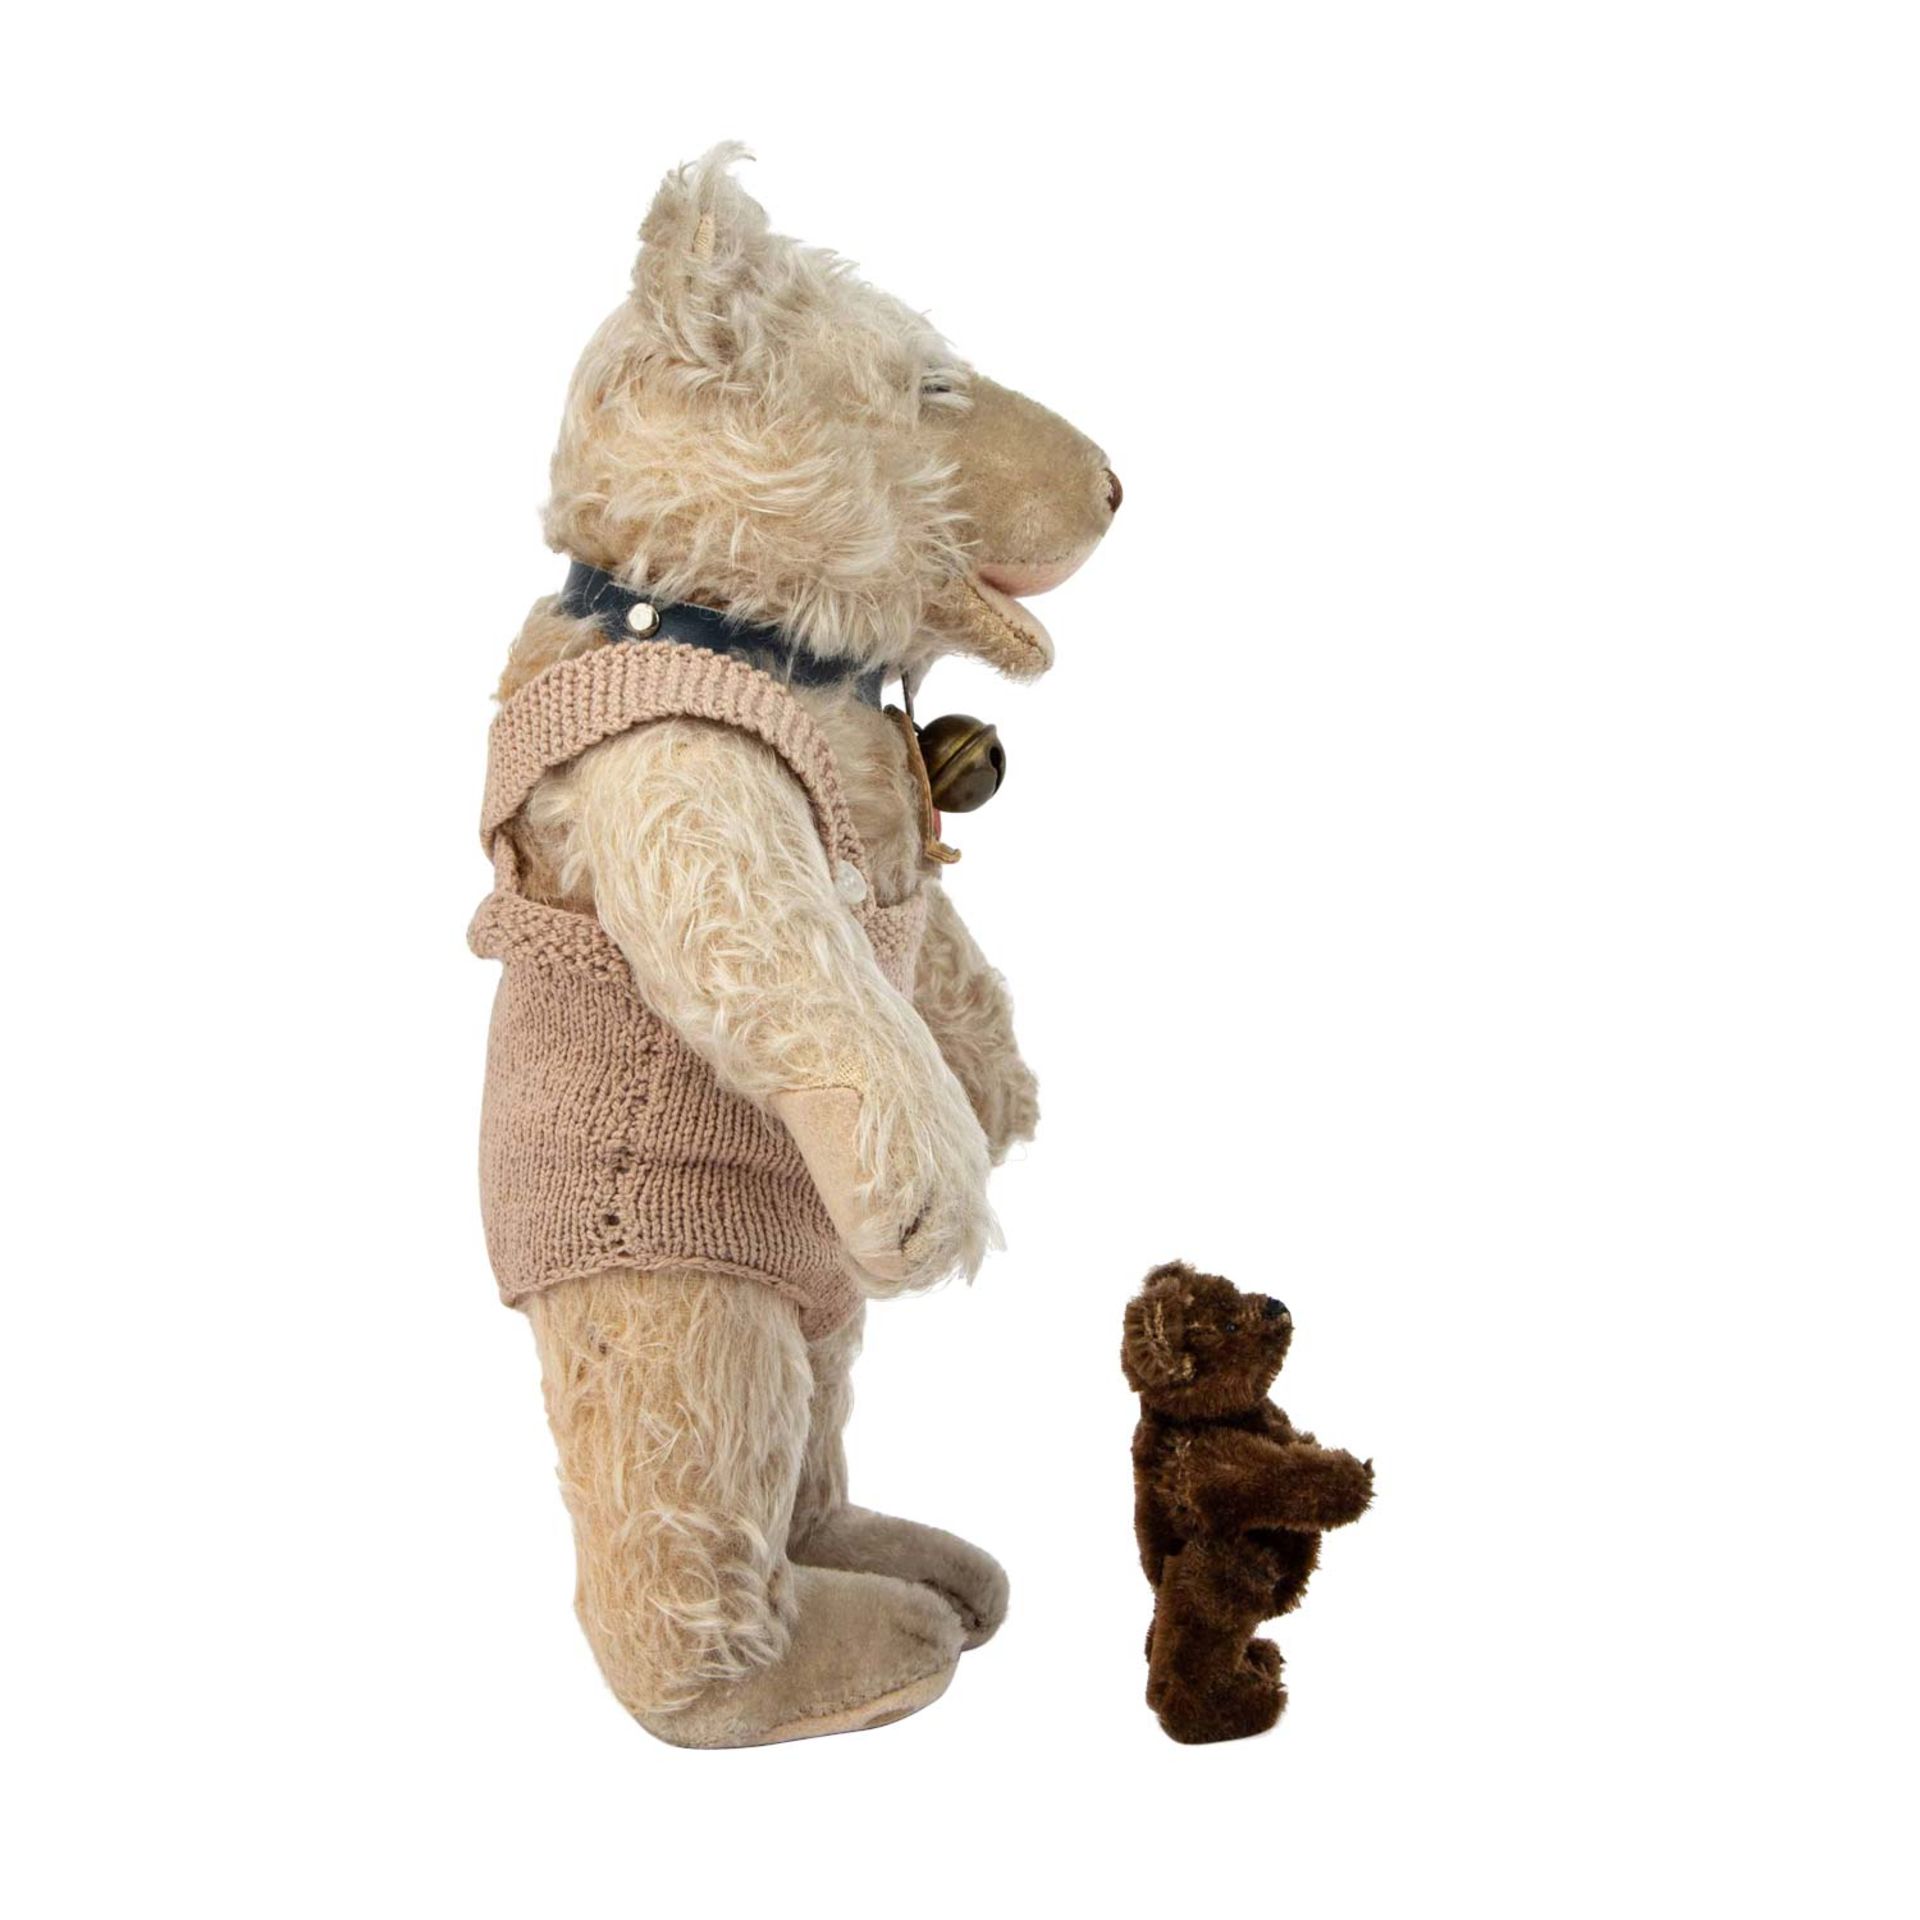 STEIFF Teddy-Baby und Miniatur -Teddy, um 1950. - Image 5 of 7